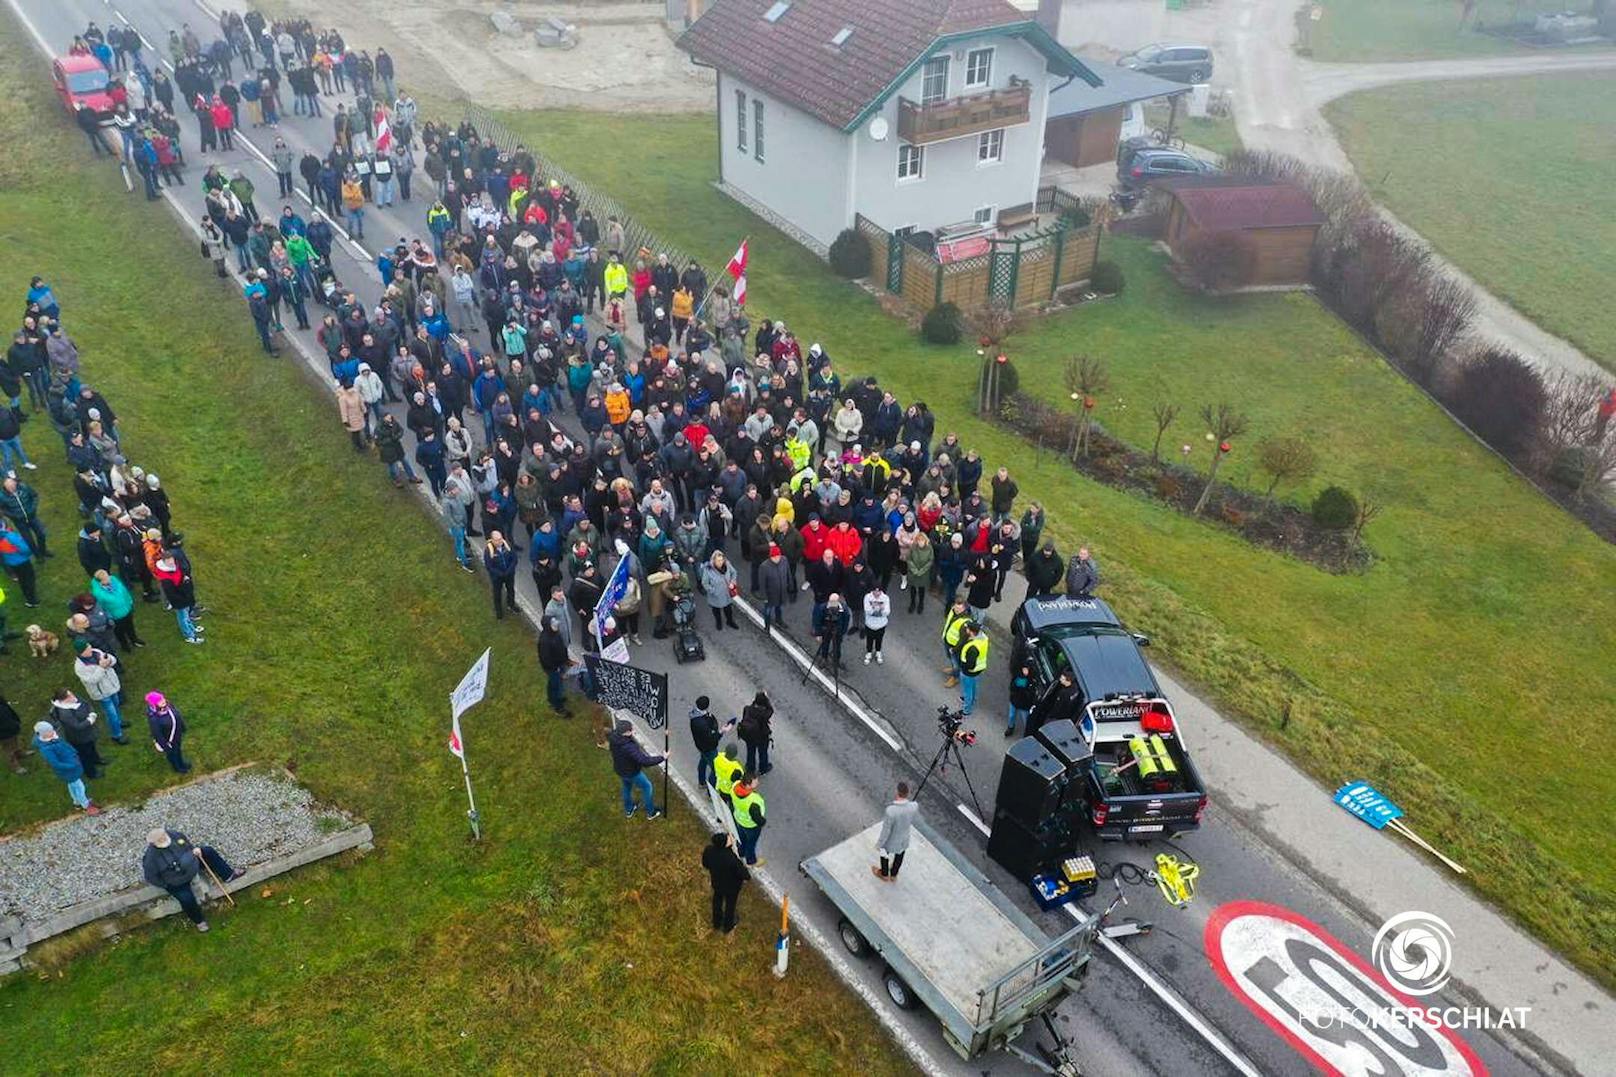 Bei der Demonstration in Frankenburg wurde eine Senkung der Zahl an Asylwerbern auf 100 gefordert.&nbsp;